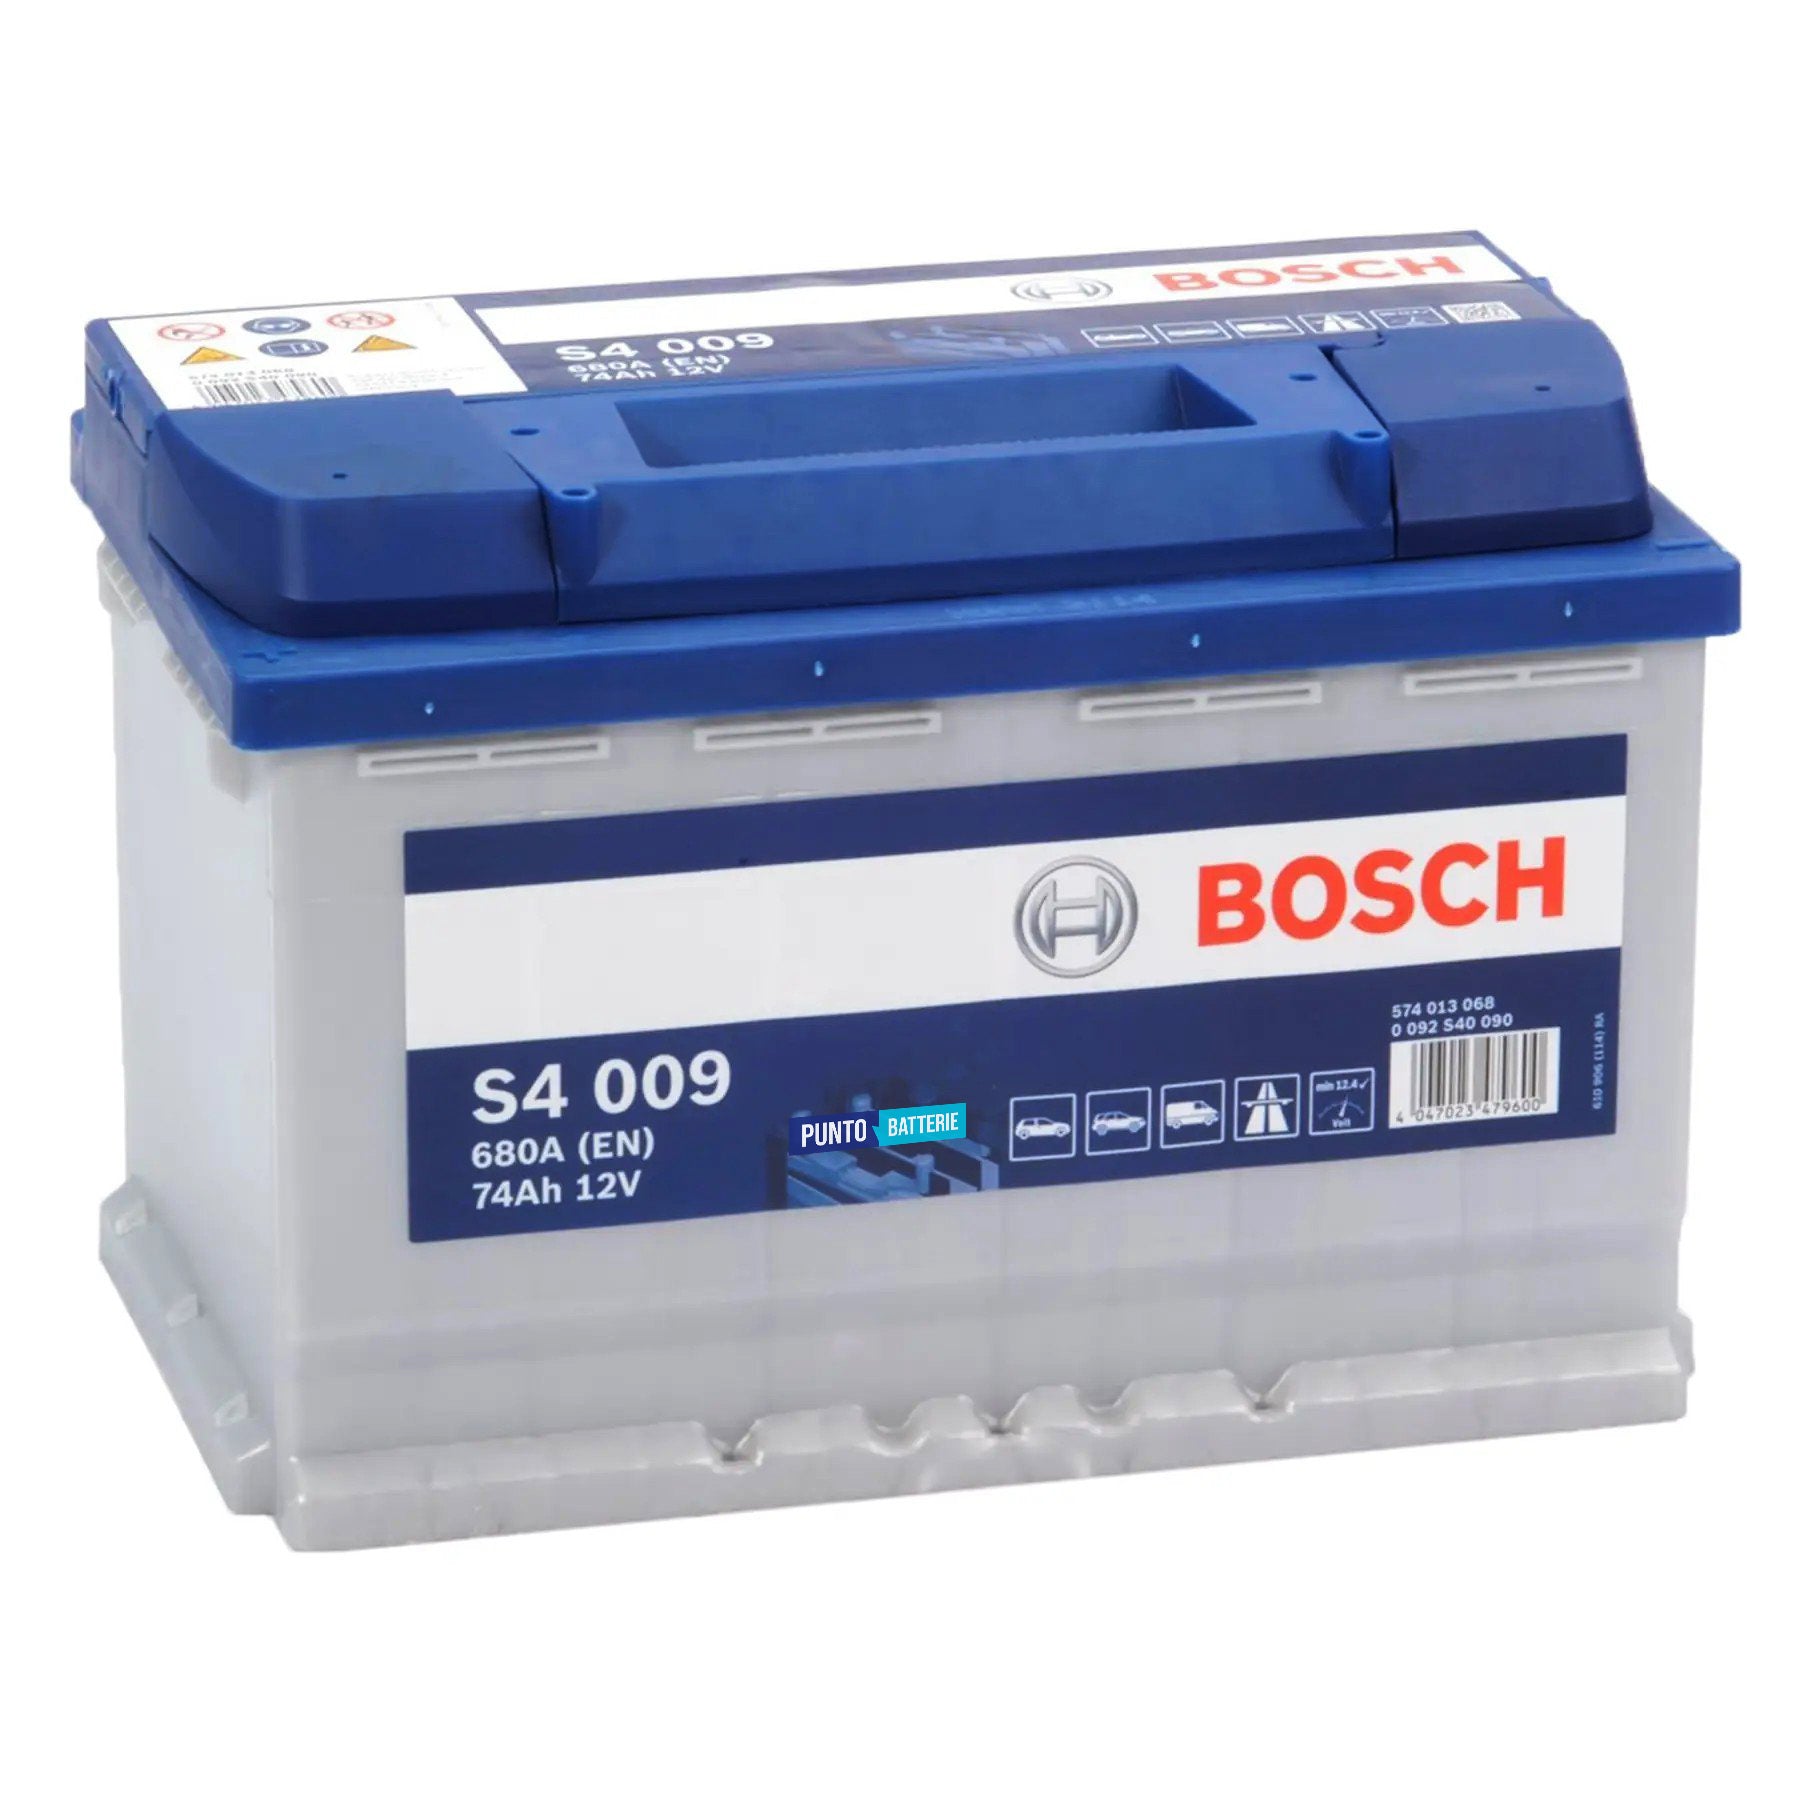 Batteria originale Bosch S4 S4 009, dimensioni 278 x 175 x 190, polo positivo a sinistra, 12 volt, 74 amperora, 680 ampere. Batteria per auto e veicoli leggeri.